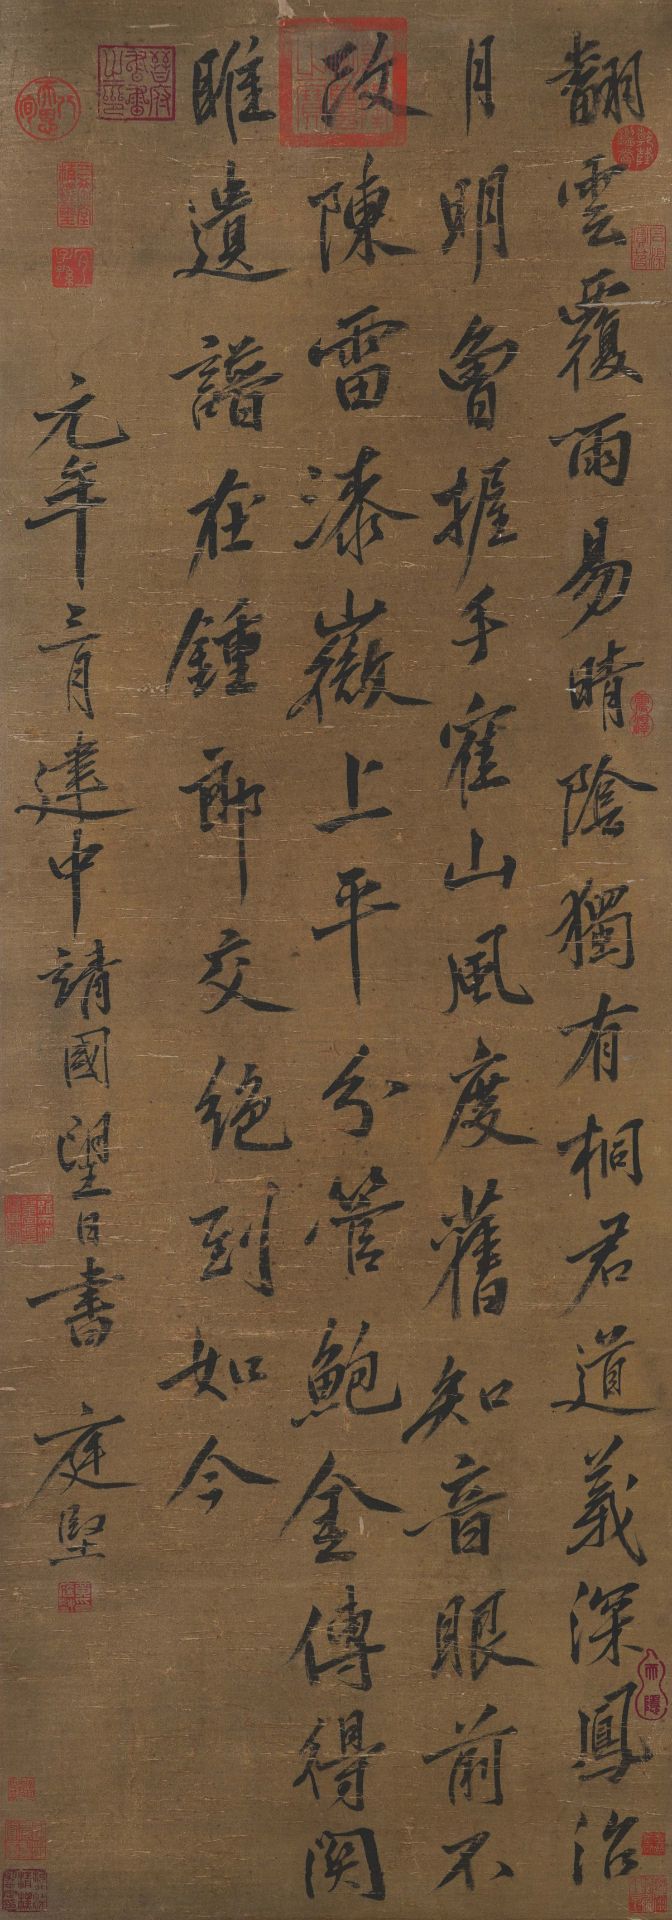 黃庭堅 A Chinese Scroll Calligraphy By Huang Tingjian - Image 2 of 13